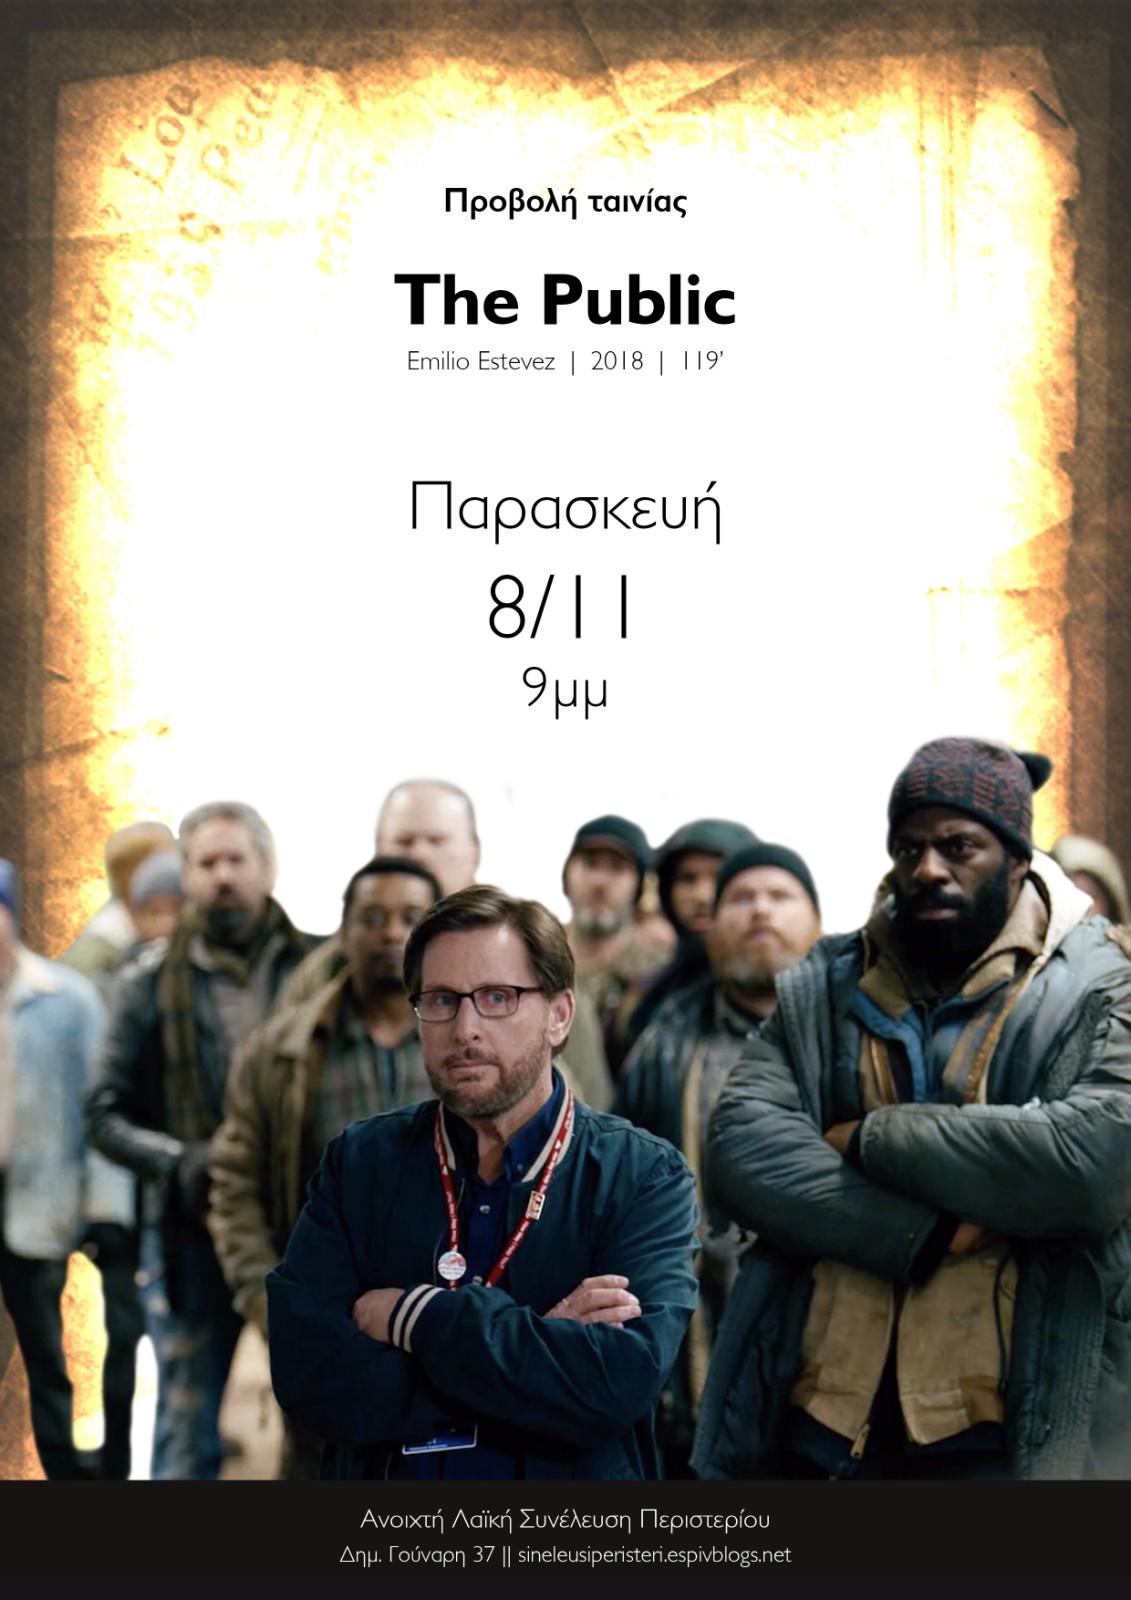 Περιστέρι: Προβολή ταινίας “The Public”